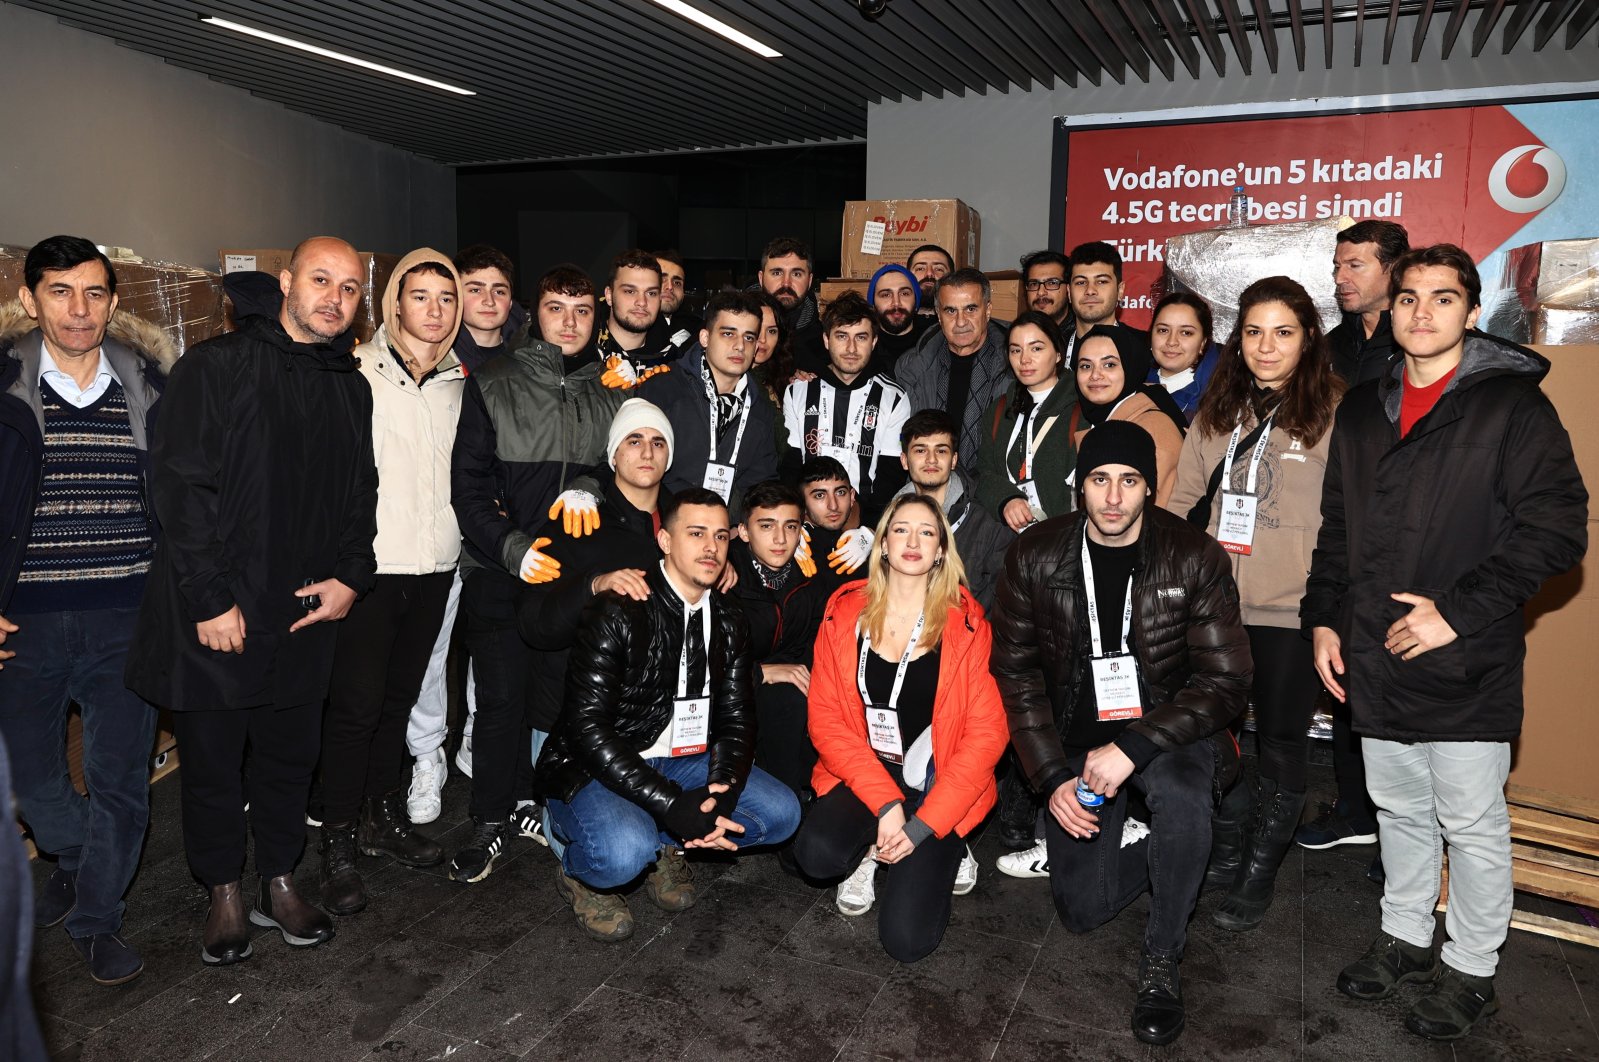 Güneş Beşiktaş bertemu dengan relawan gempa Türkiye